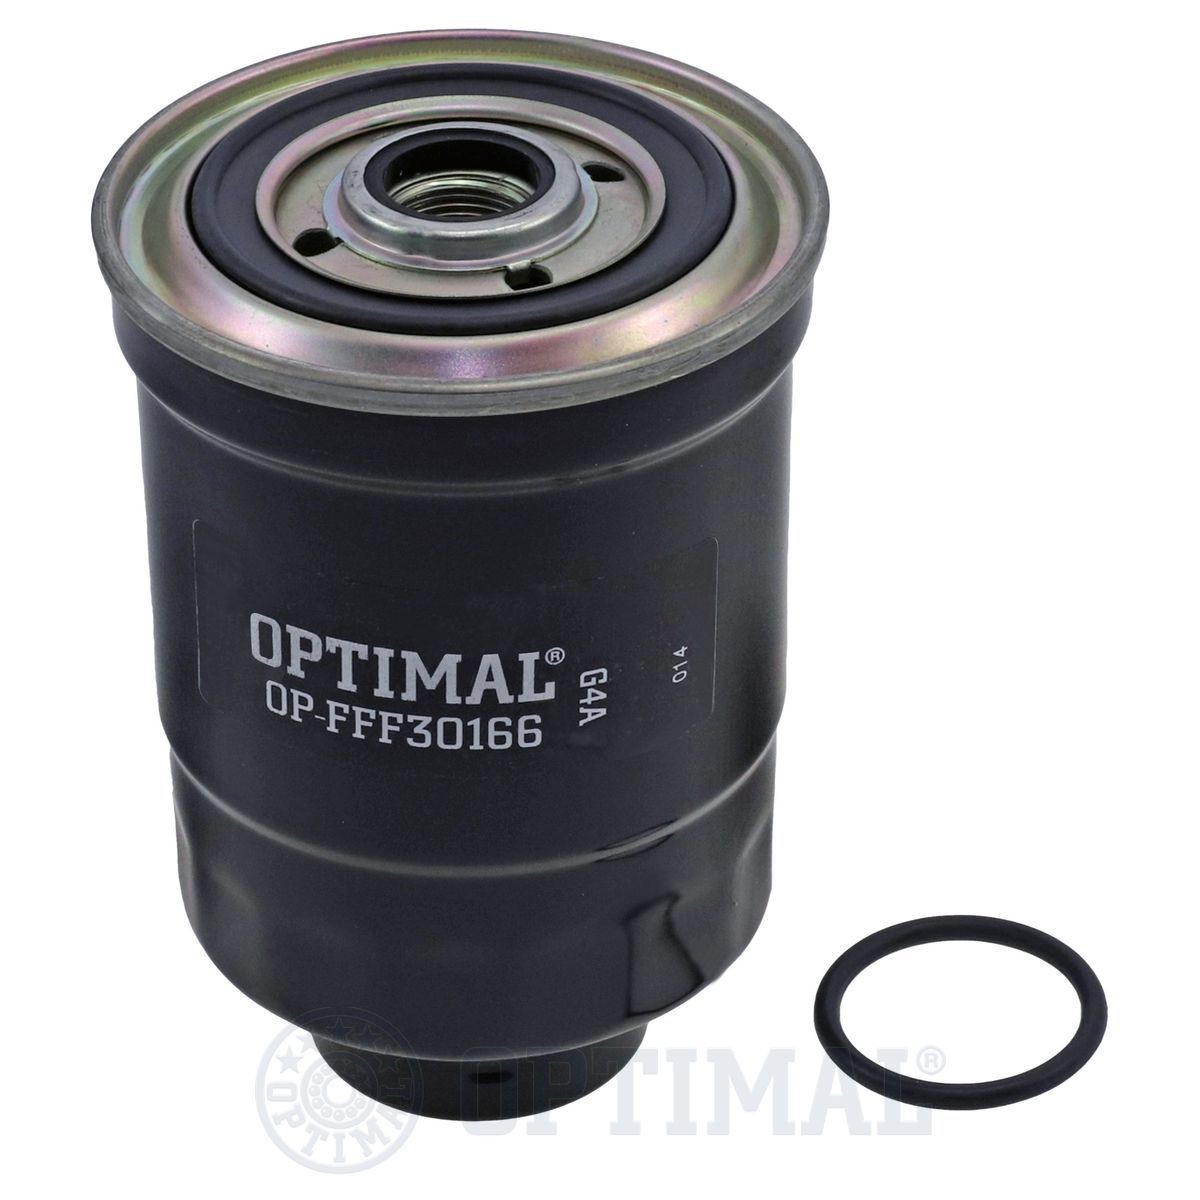 OPTIMAL OP-FFF30166 Fuel filter 93156943